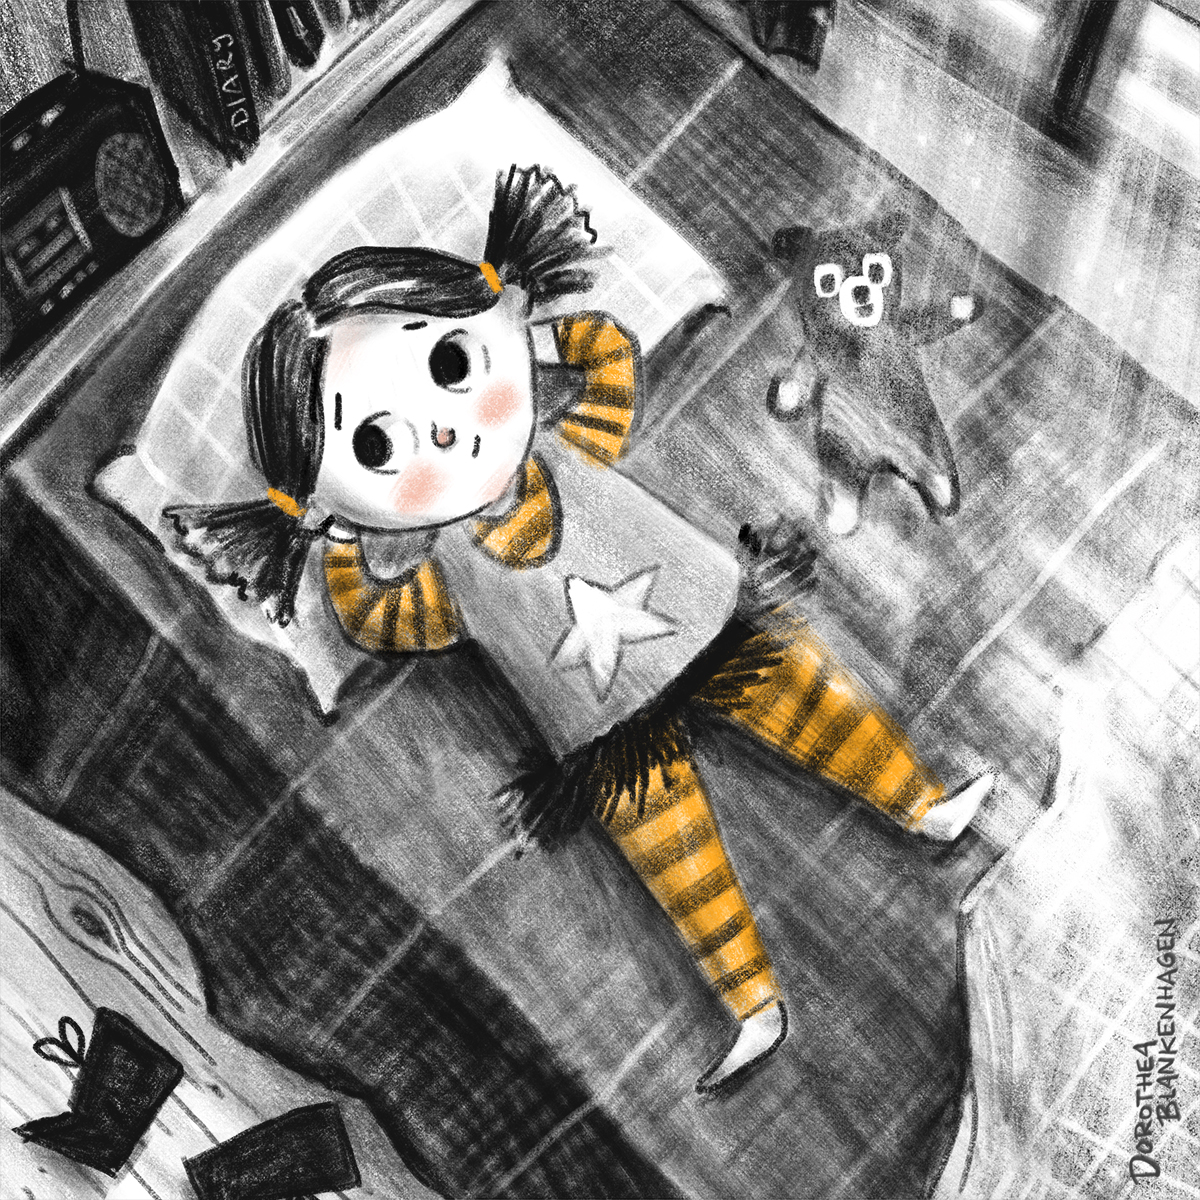 Die Illustration zeigt ein Mädchen nachdenklich in ihrem Bett liegen